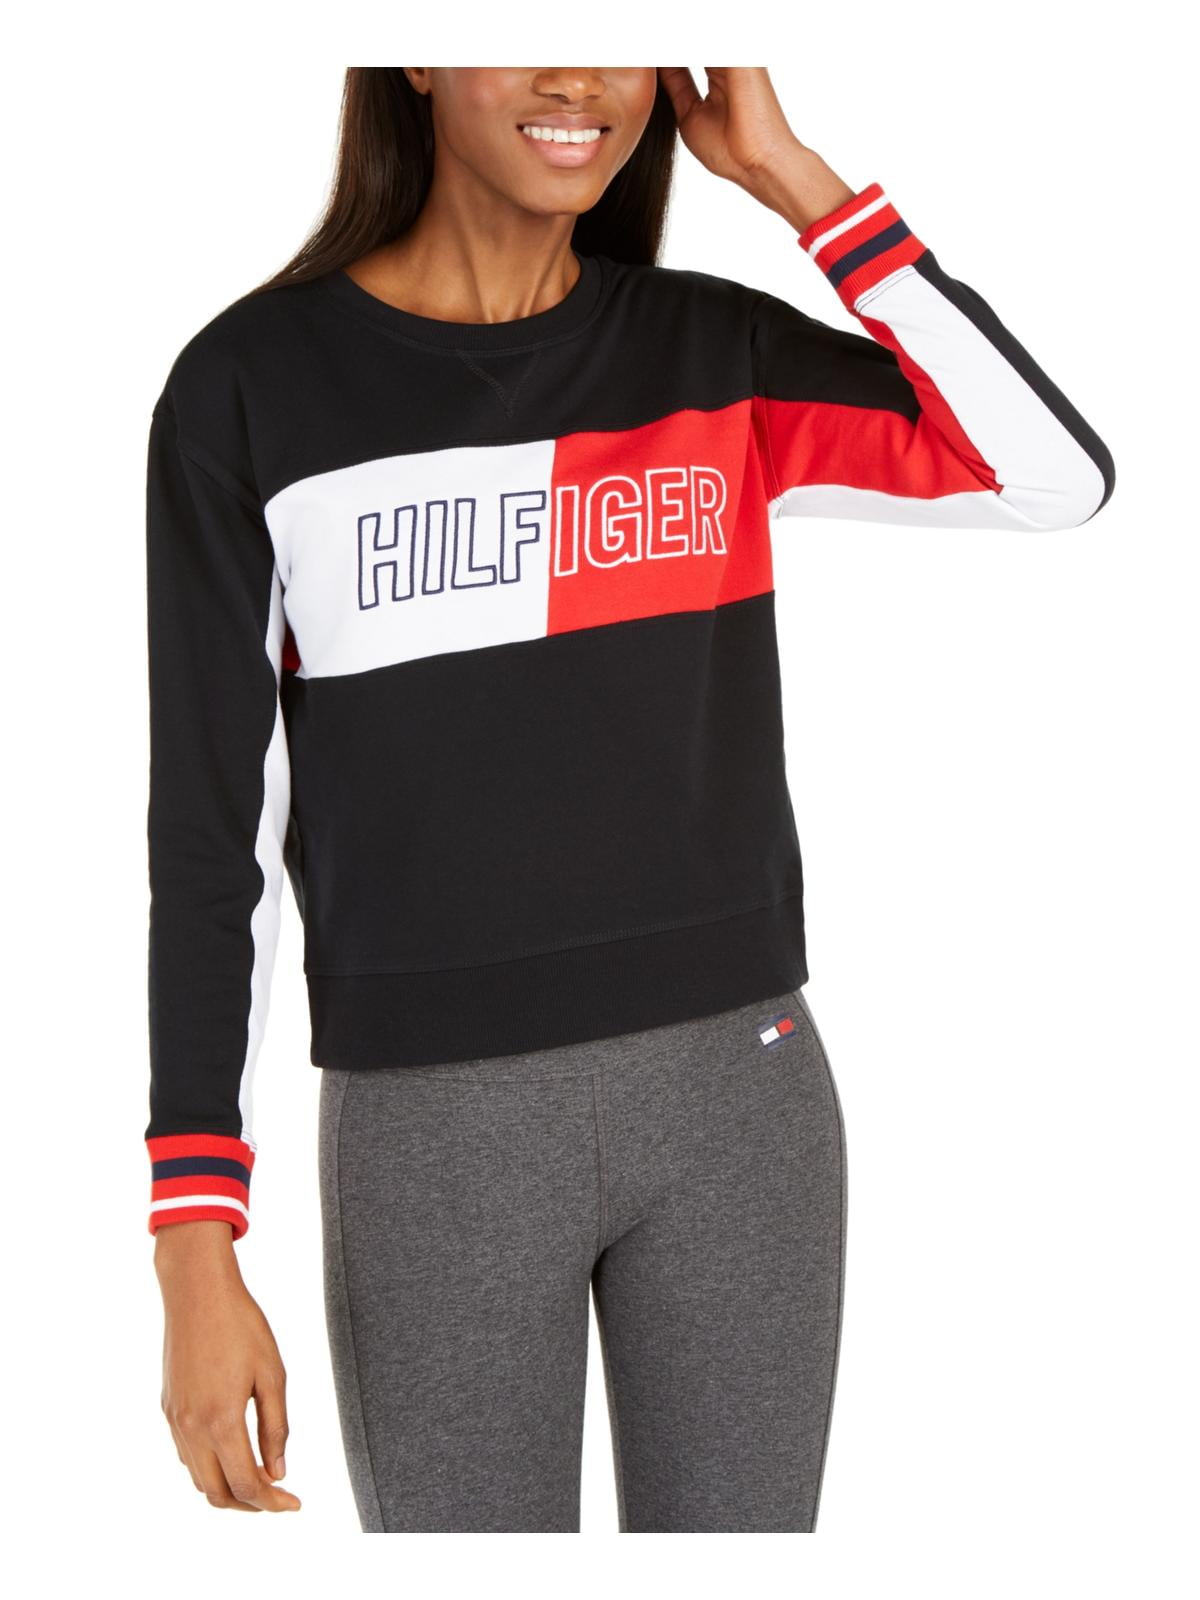 hoek Kraan Vlek Tommy Hilfiger Sport Womens Fitness Workout Sweatshirt Black L - Walmart.com